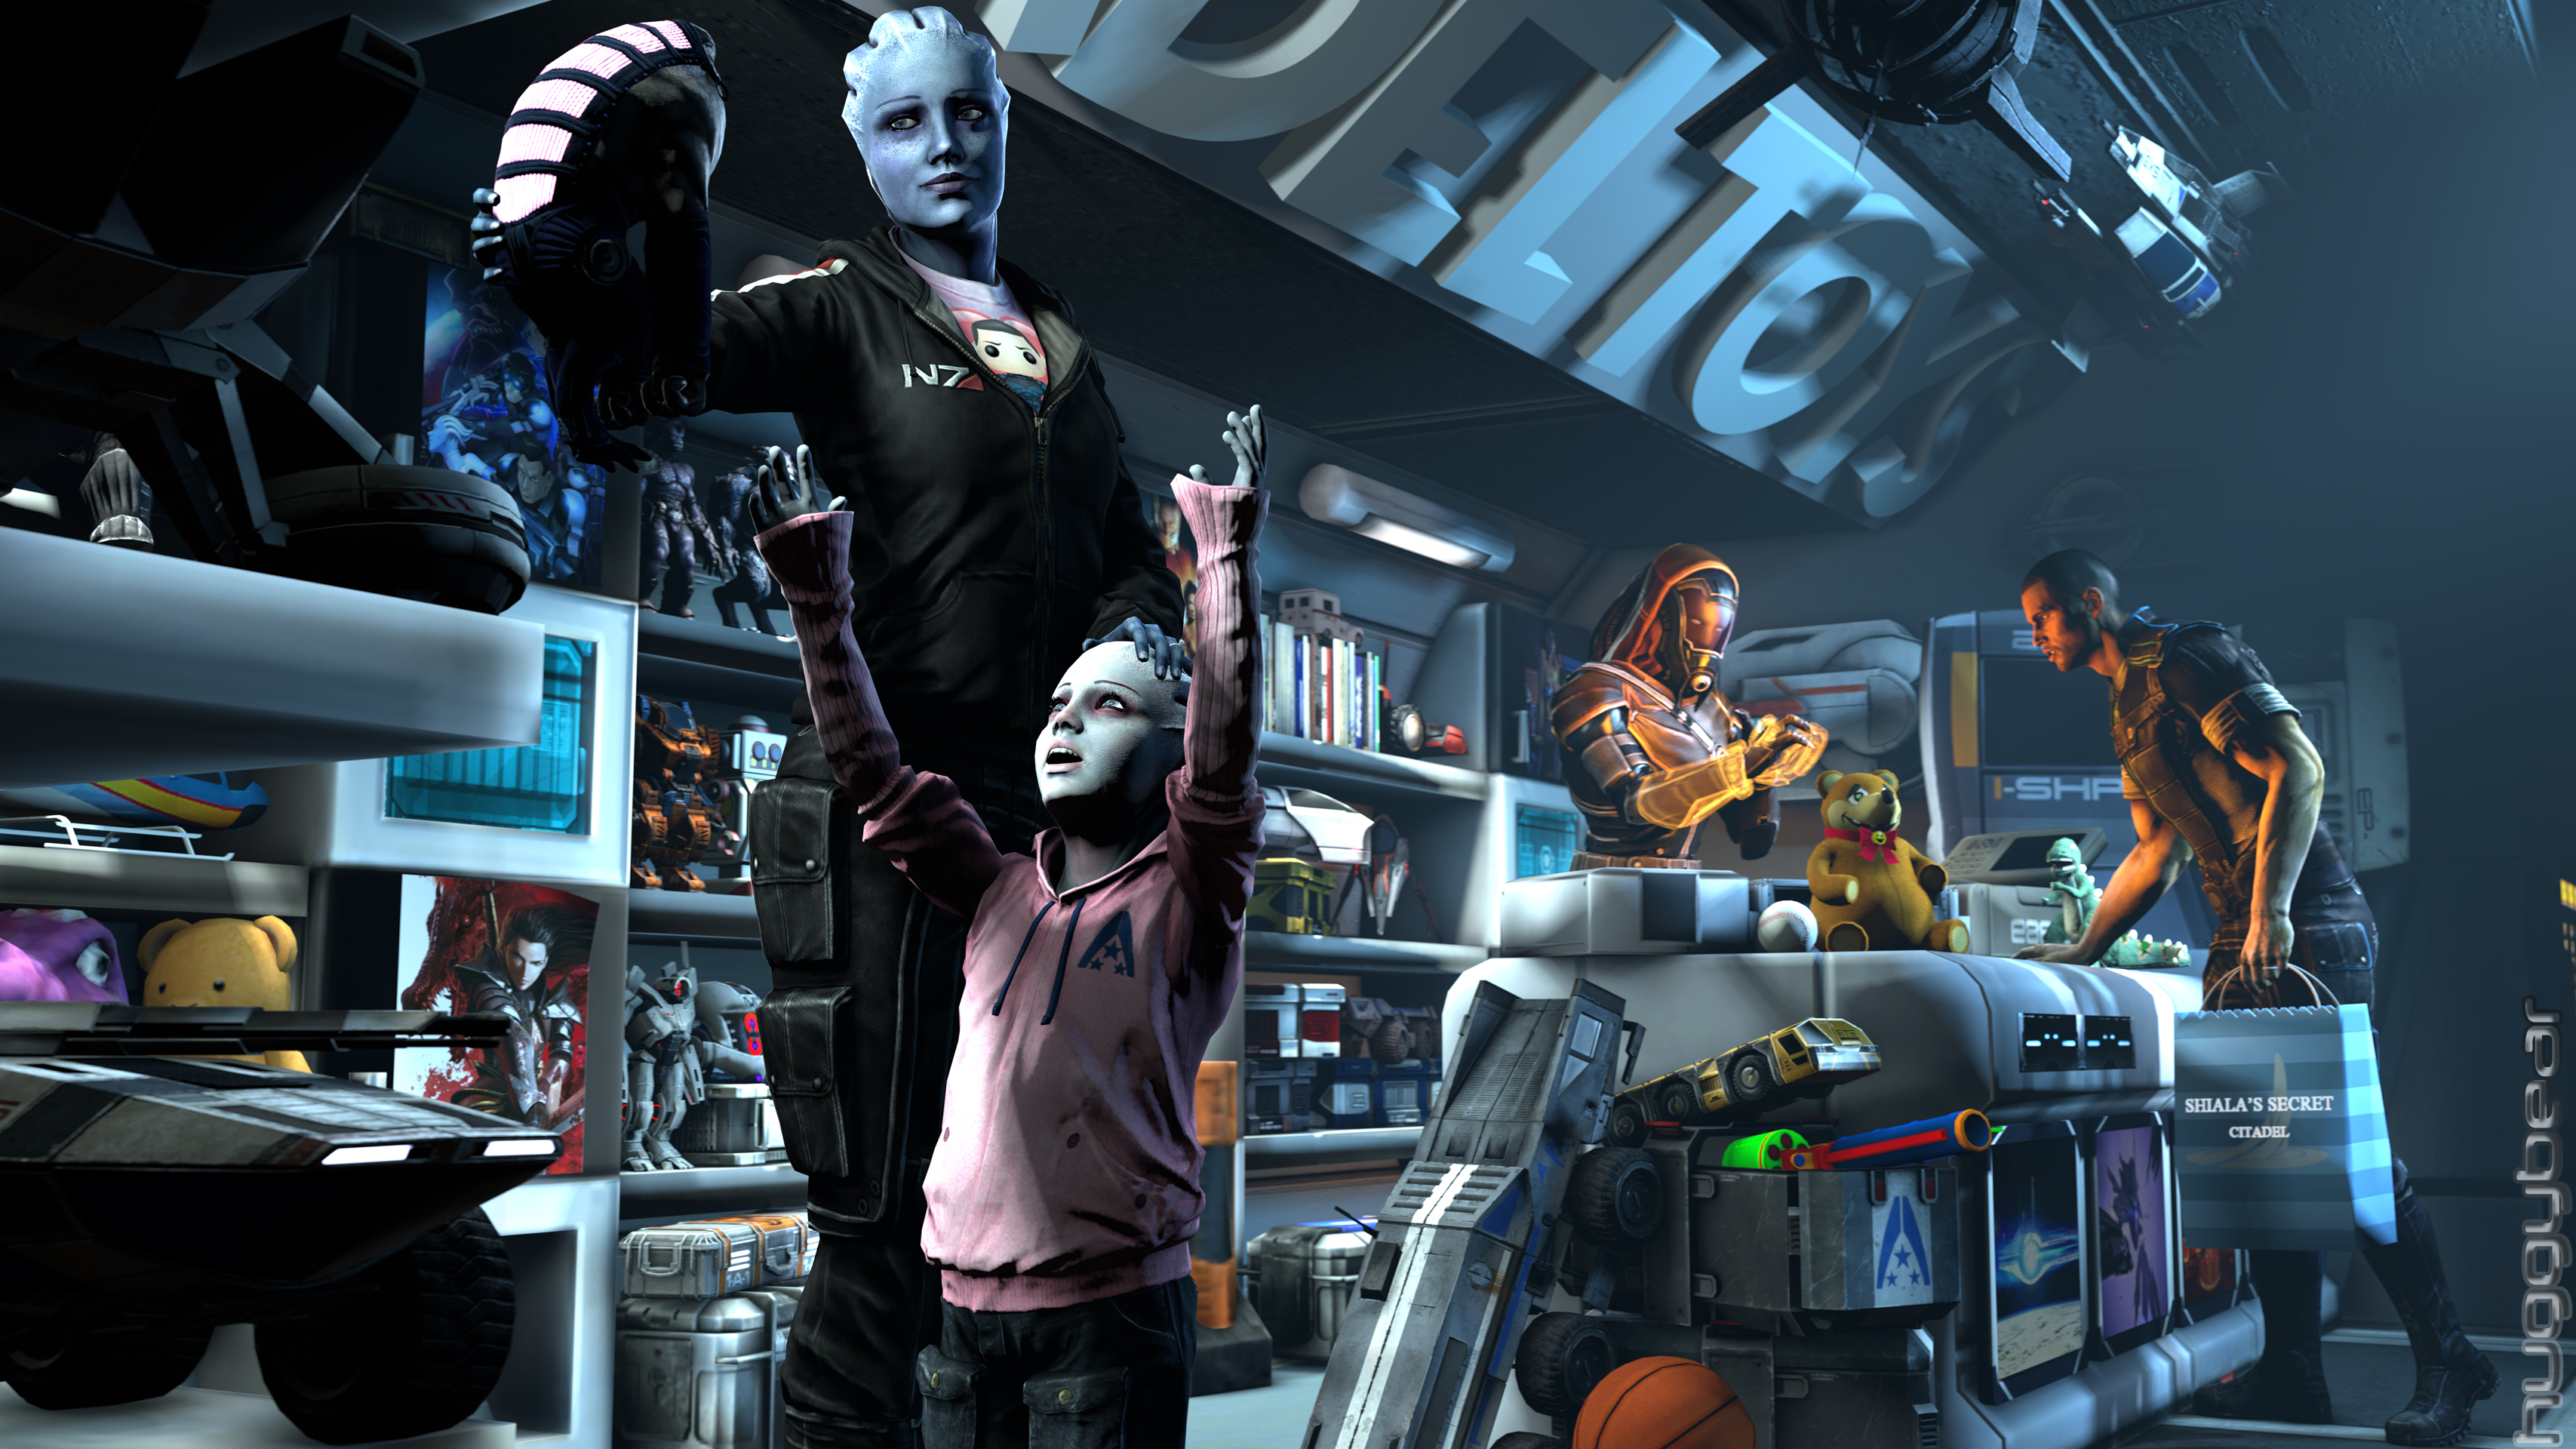 Descarga gratuita de fondo de pantalla para móvil de Mass Effect, Videojuego, Comandante Shepard, Liara T'soni.